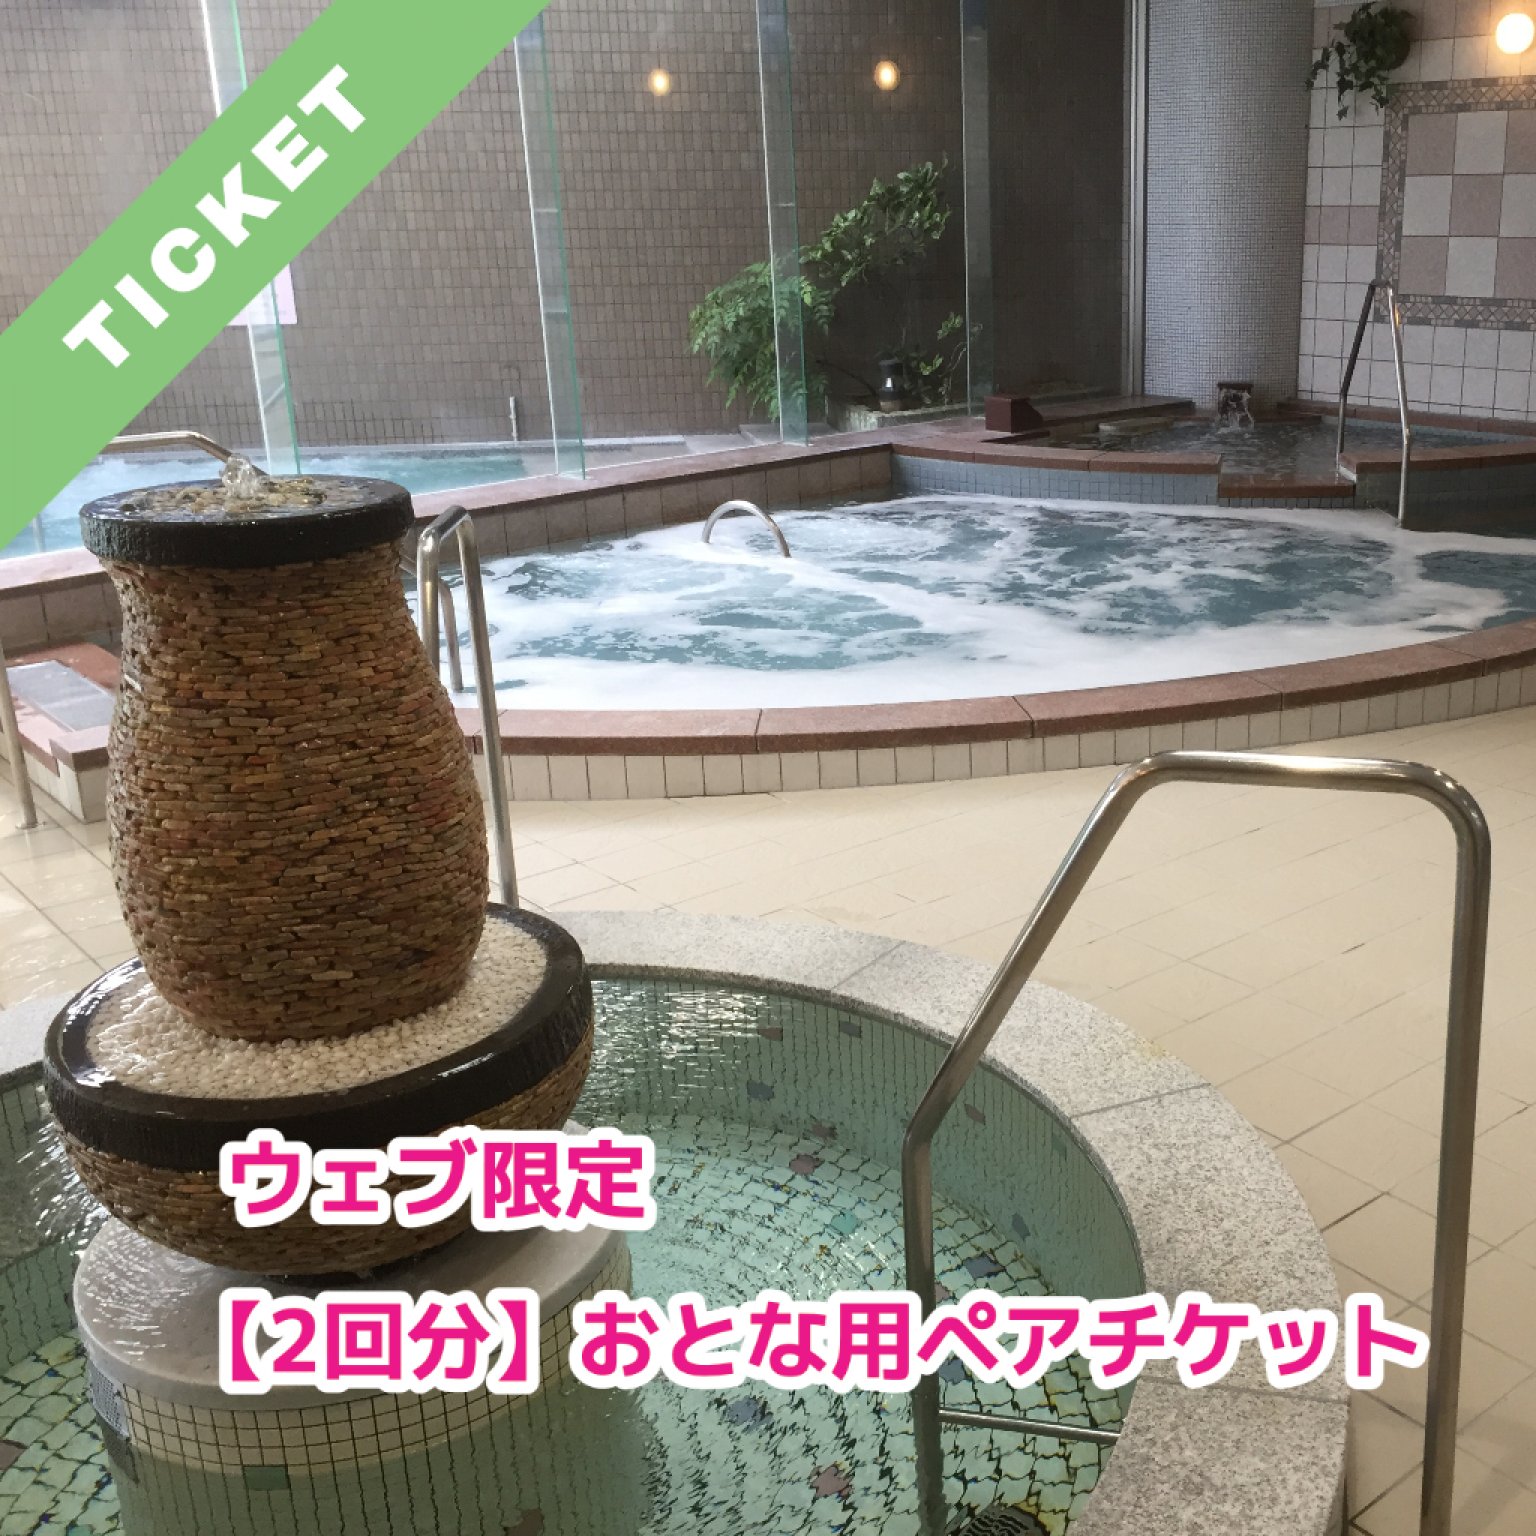 【2回分】（おとな用ペアチケット）美濃田の湯 入浴券